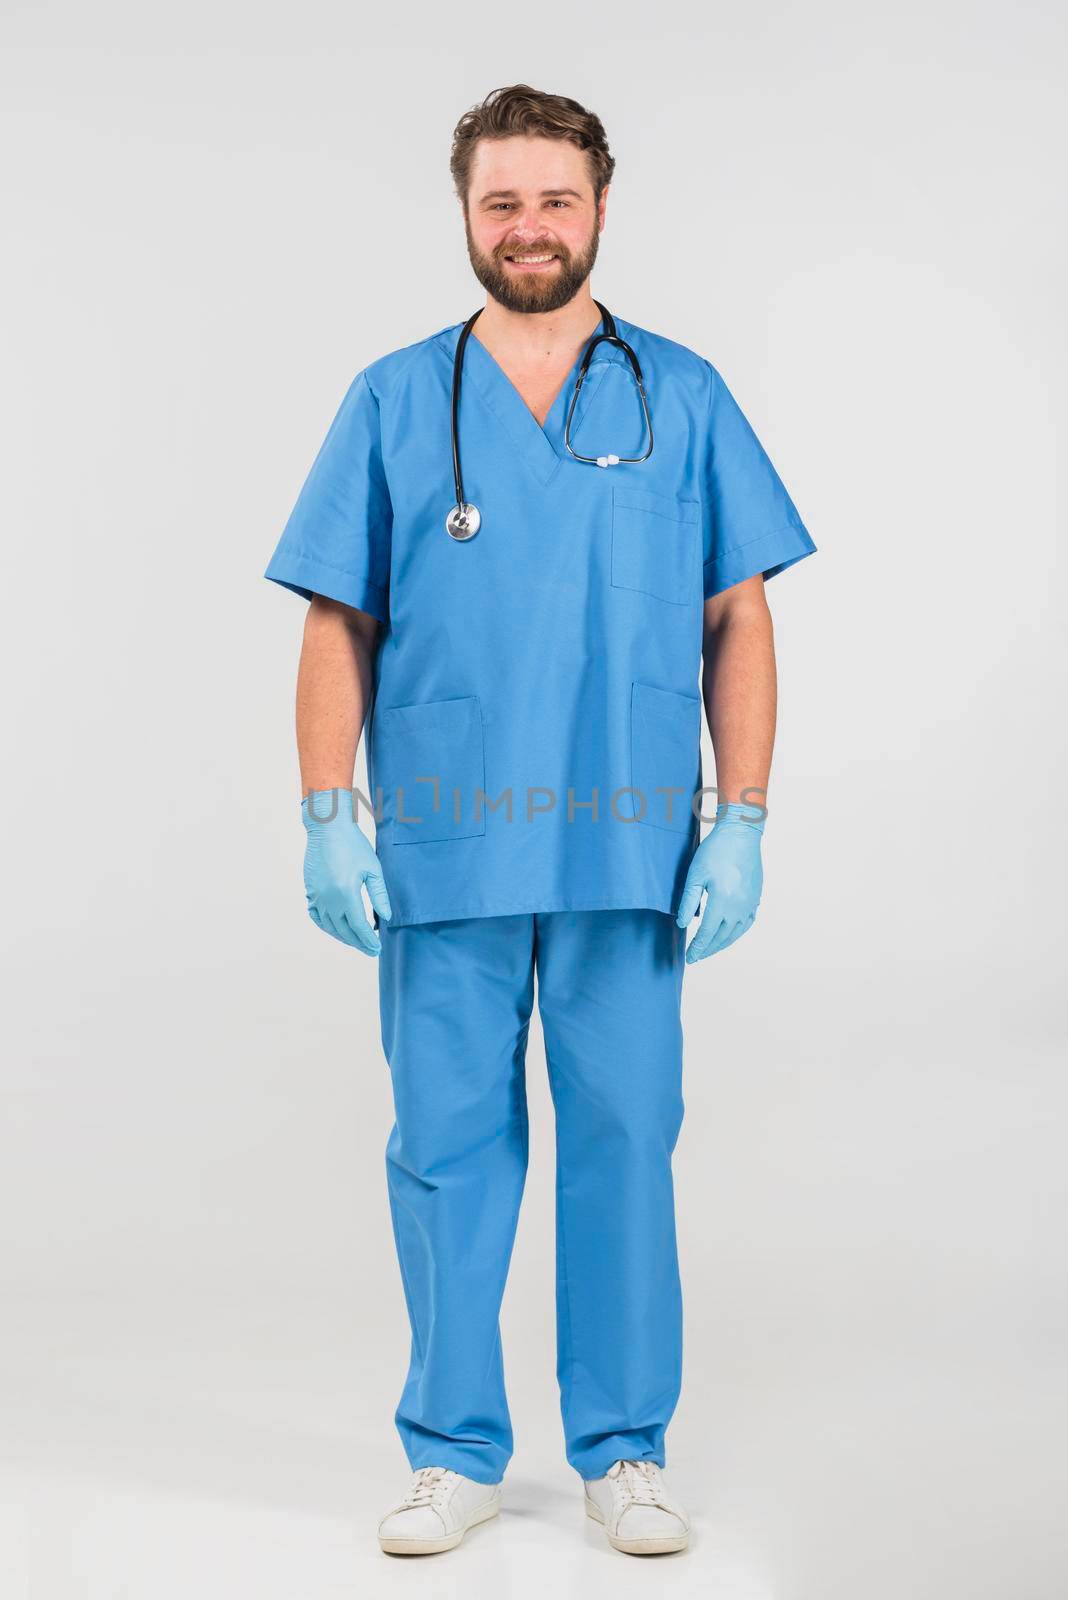 nurse man standing smiling